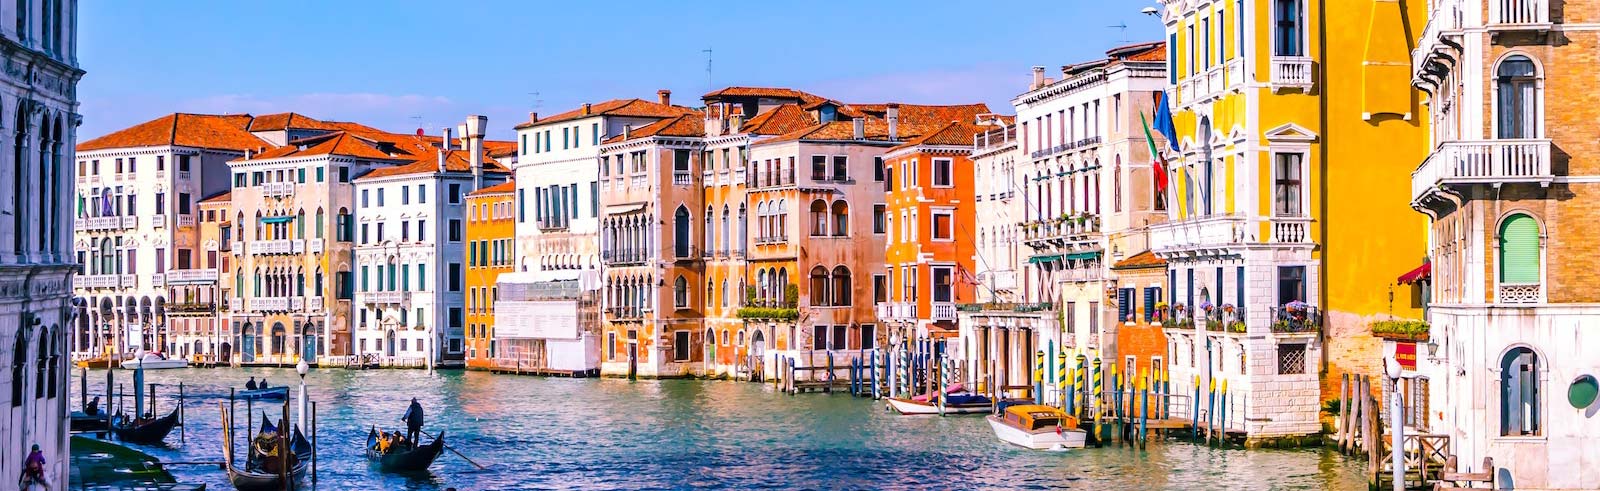 Venezia Italia canale con edifici colorati